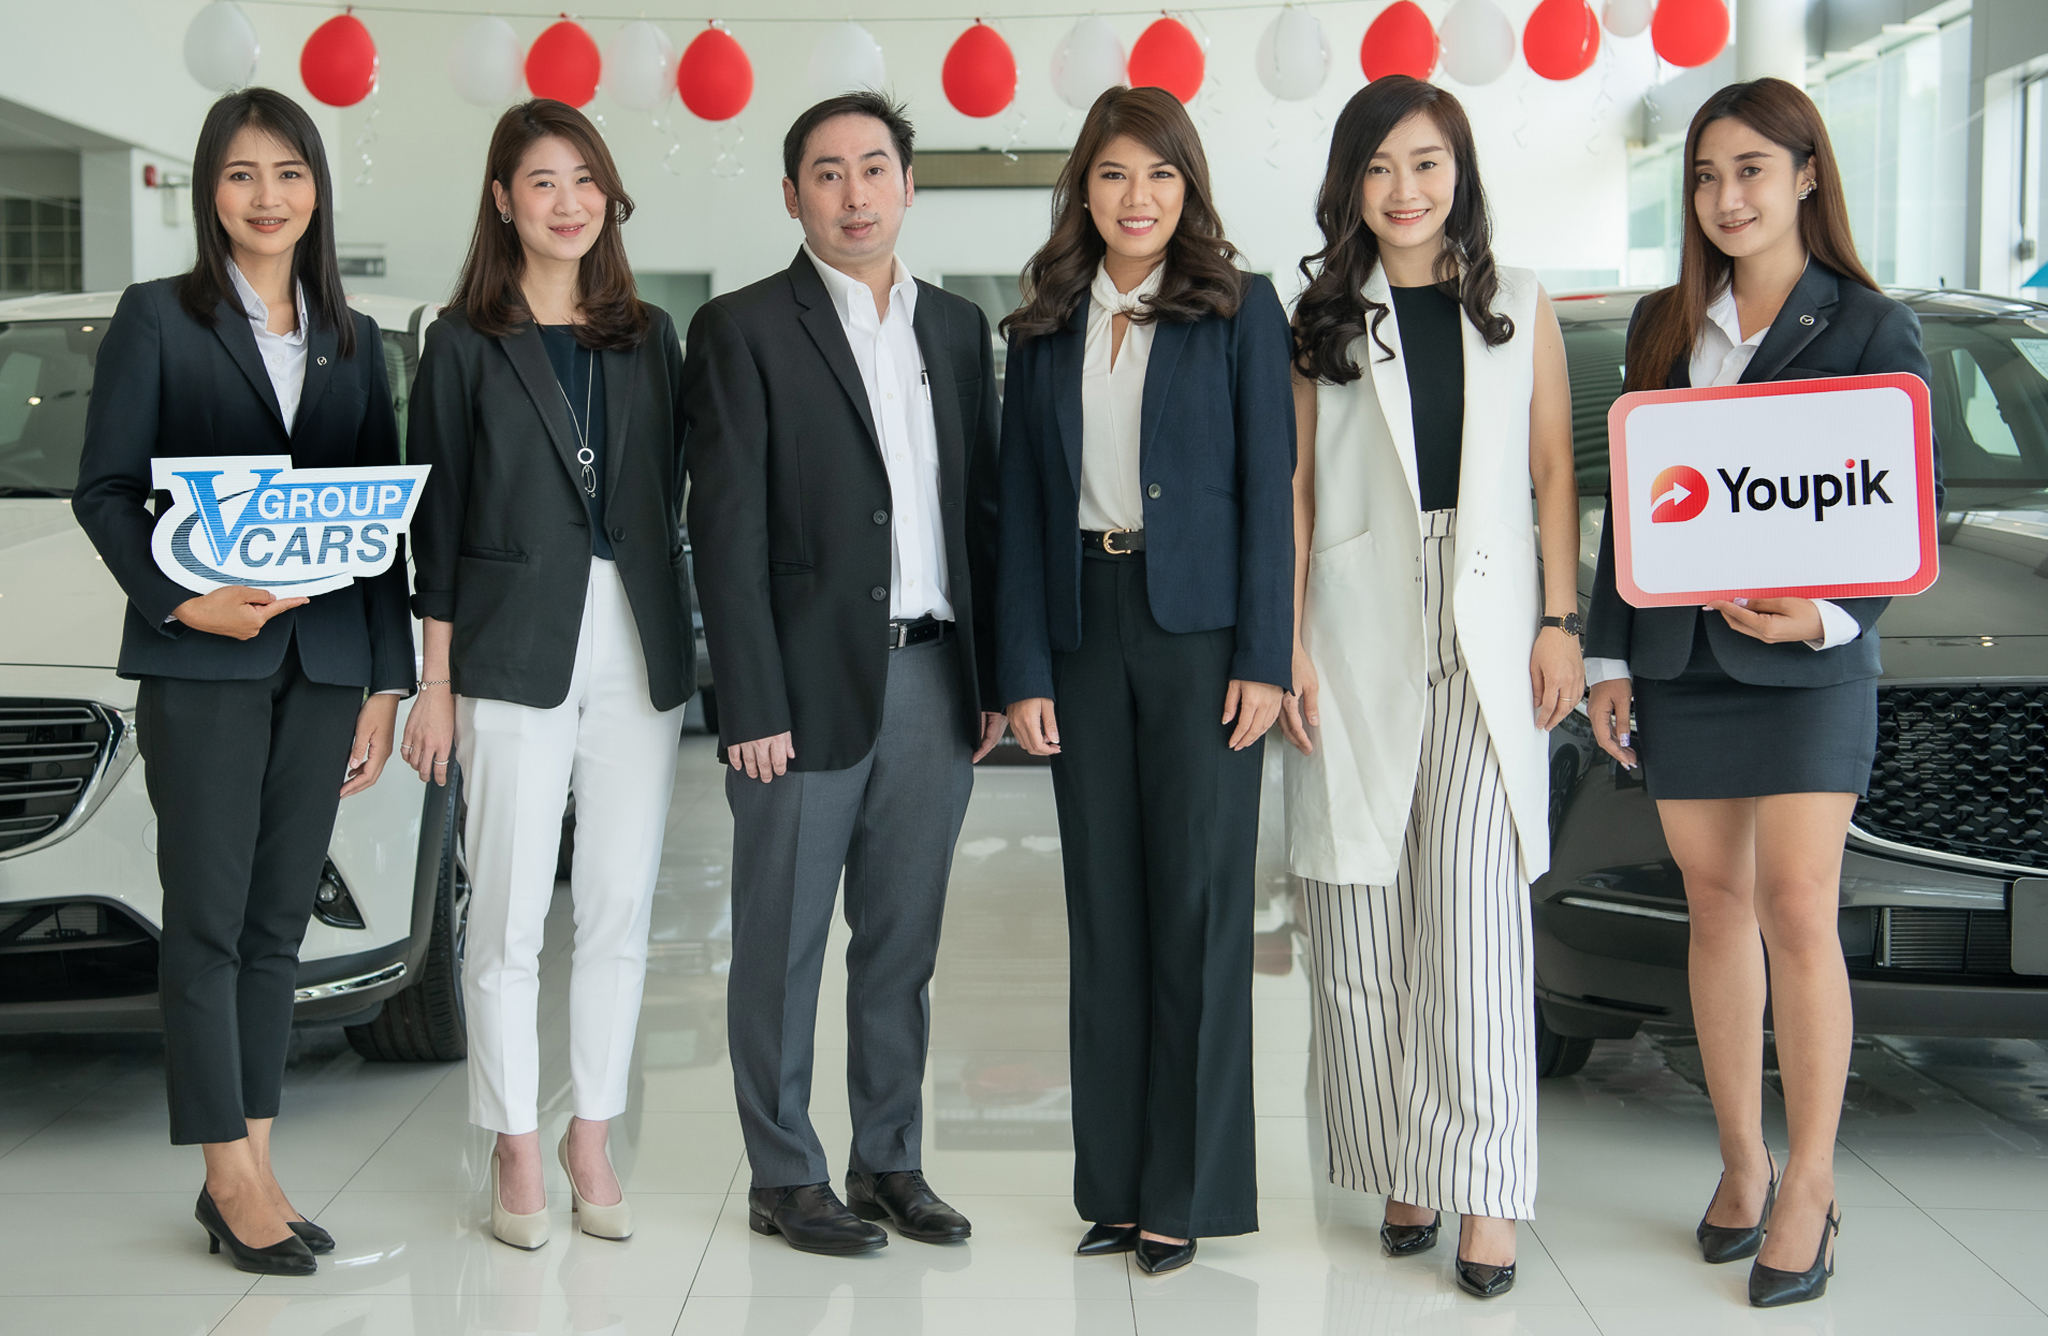 Youpik เสริมธุรกิจแกร่ง ผนึกกำลัง V Group Cars สนับสนุนผู้บริโภคโปรโมทรถยนต์สร้างรายได้เป็นครั้งแรกในประเทศไทย